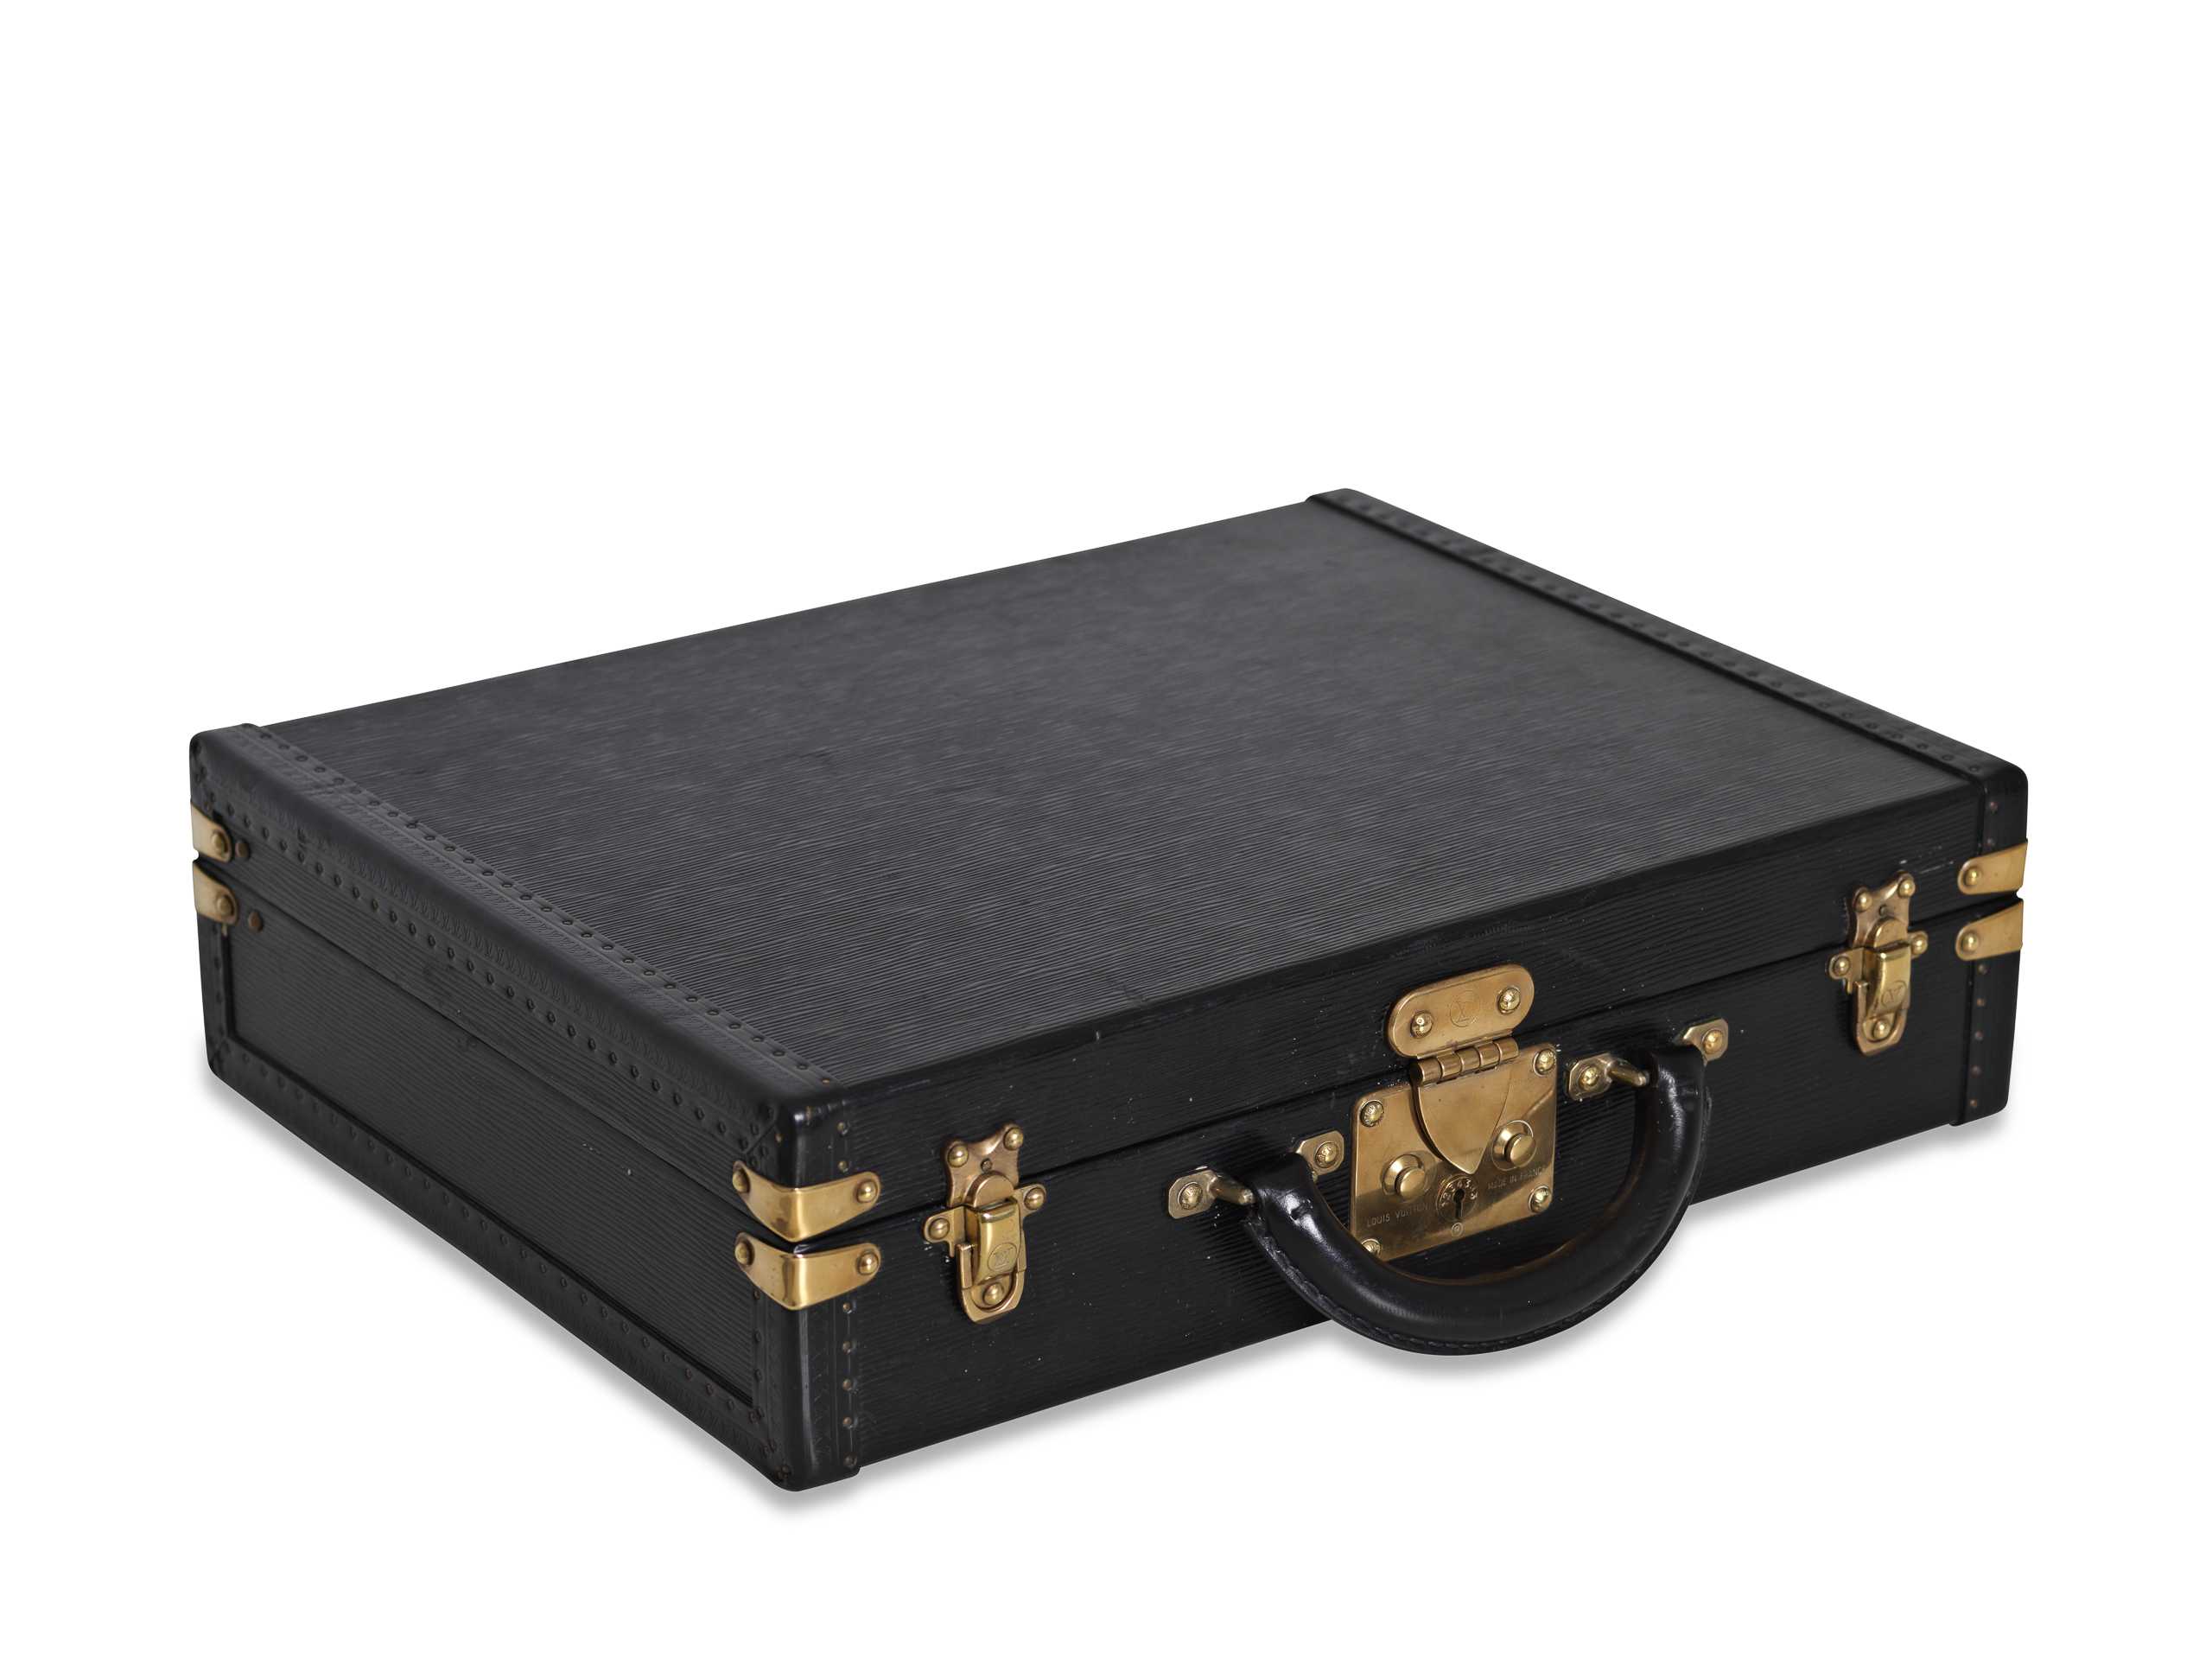 SOLD - Custom Louis Vuitton black watch briefcase